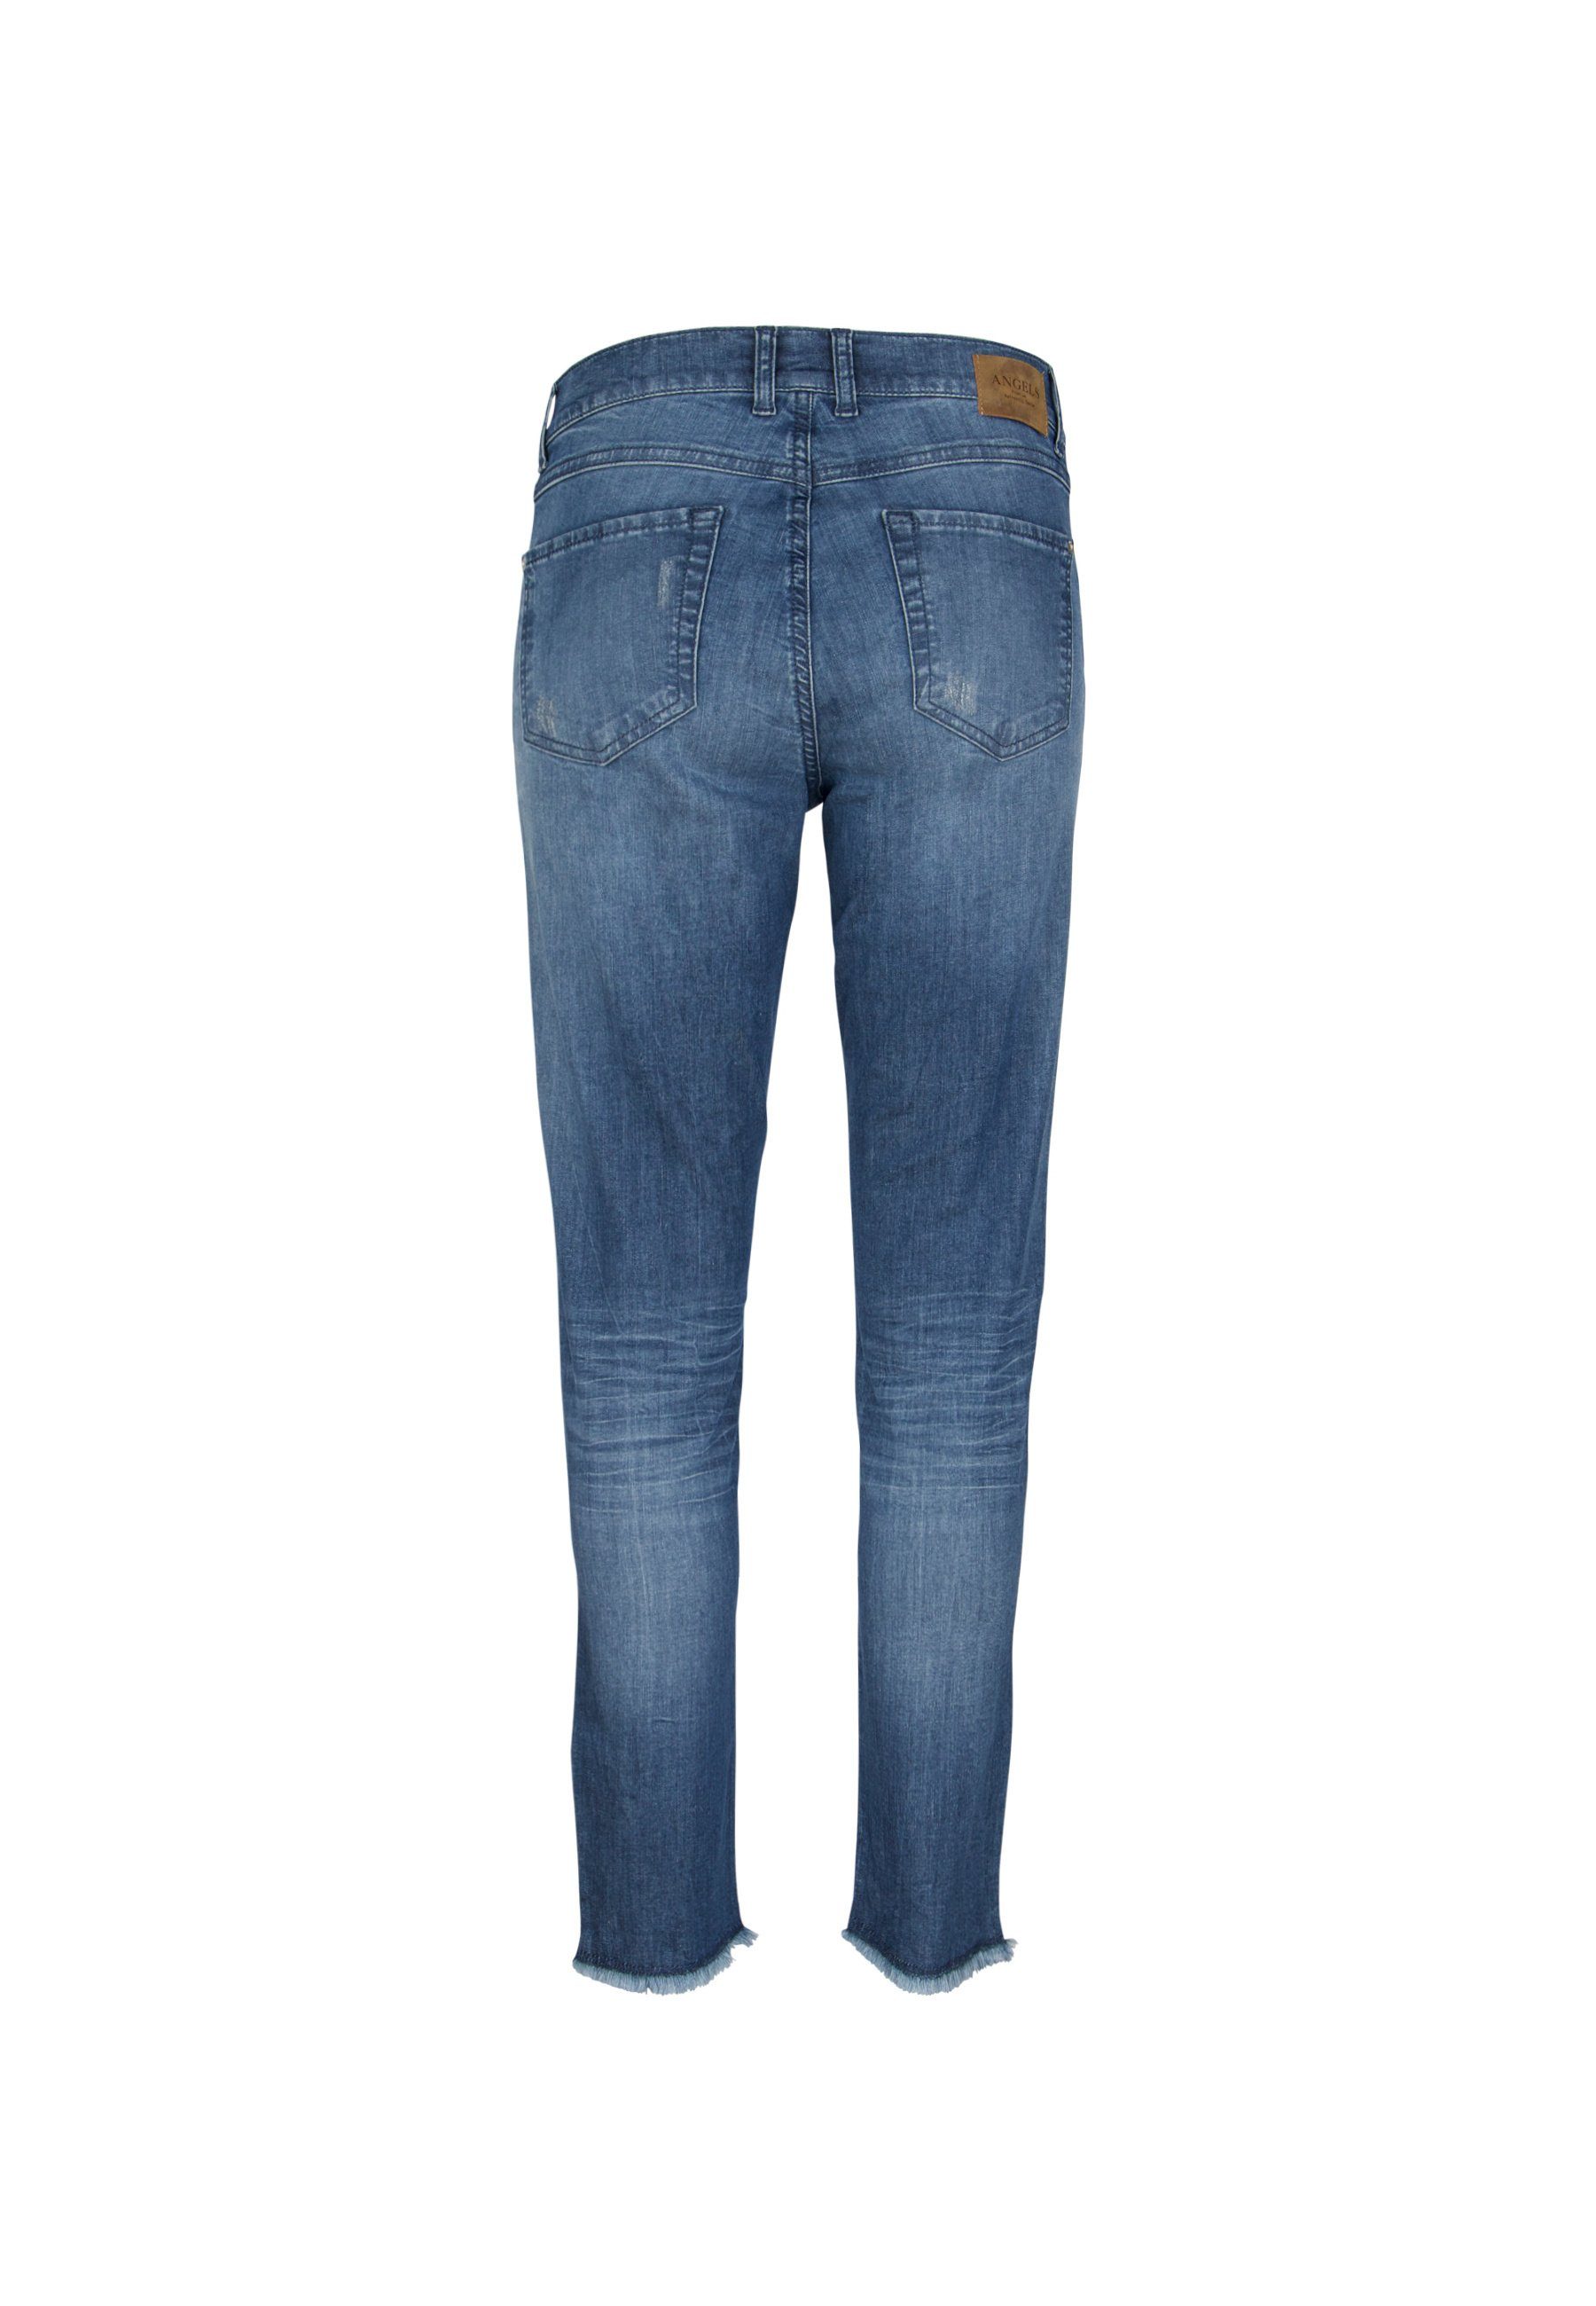 Label-Applikationen dunkelblau mit Ankle Slim-fit-Jeans Zip ANGELS Slim-Jeans Skinny Fringe